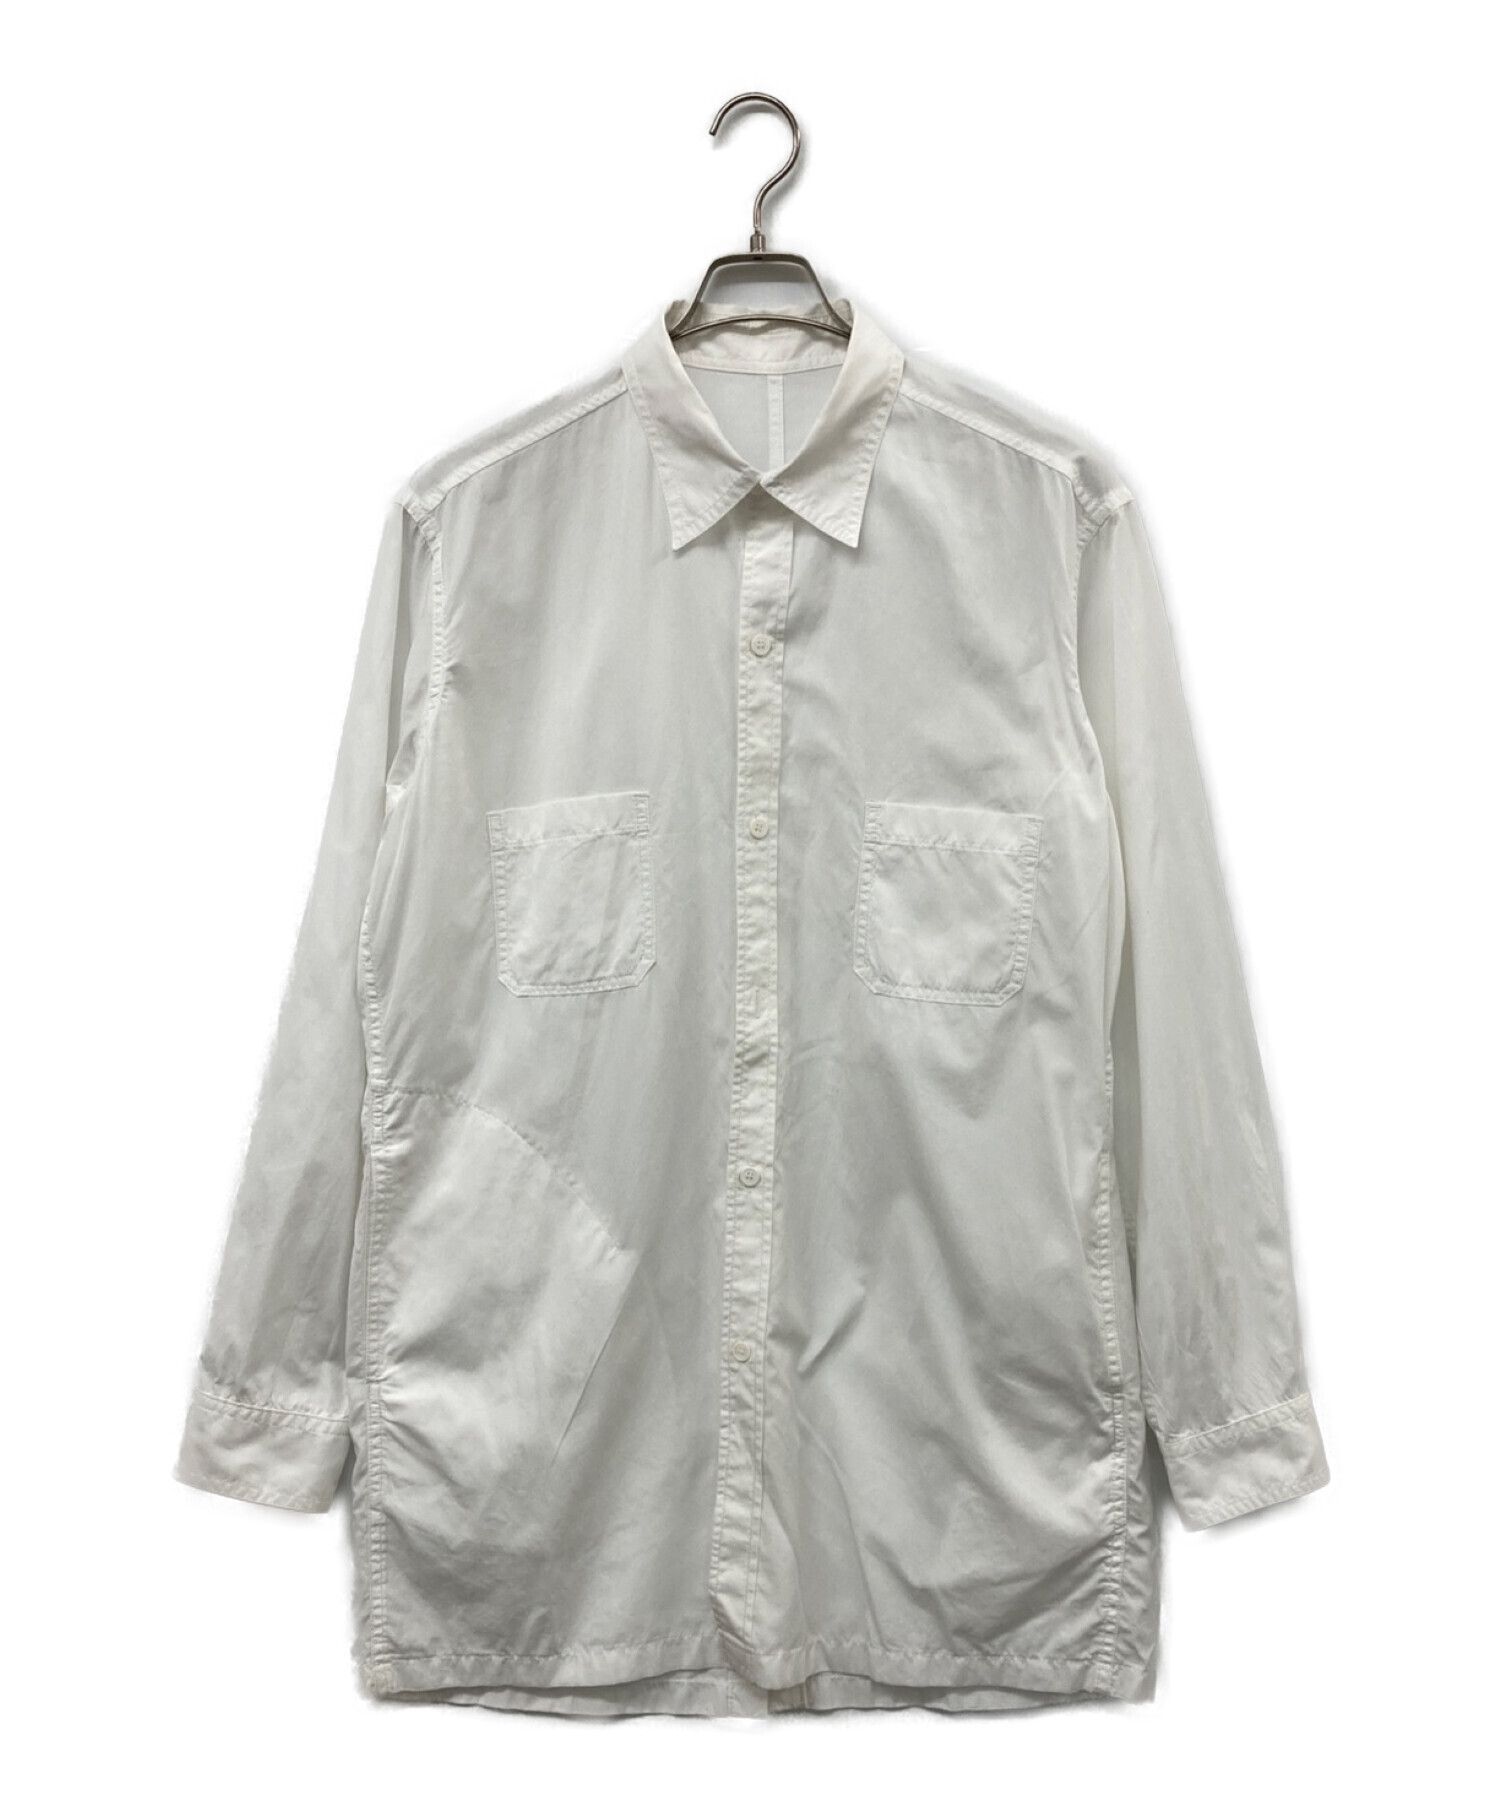 Yohji Yamamoto pour homme (ヨウジヤマモト プールオム) M-後アキ環縫いシャツ ホワイト サイズ:4